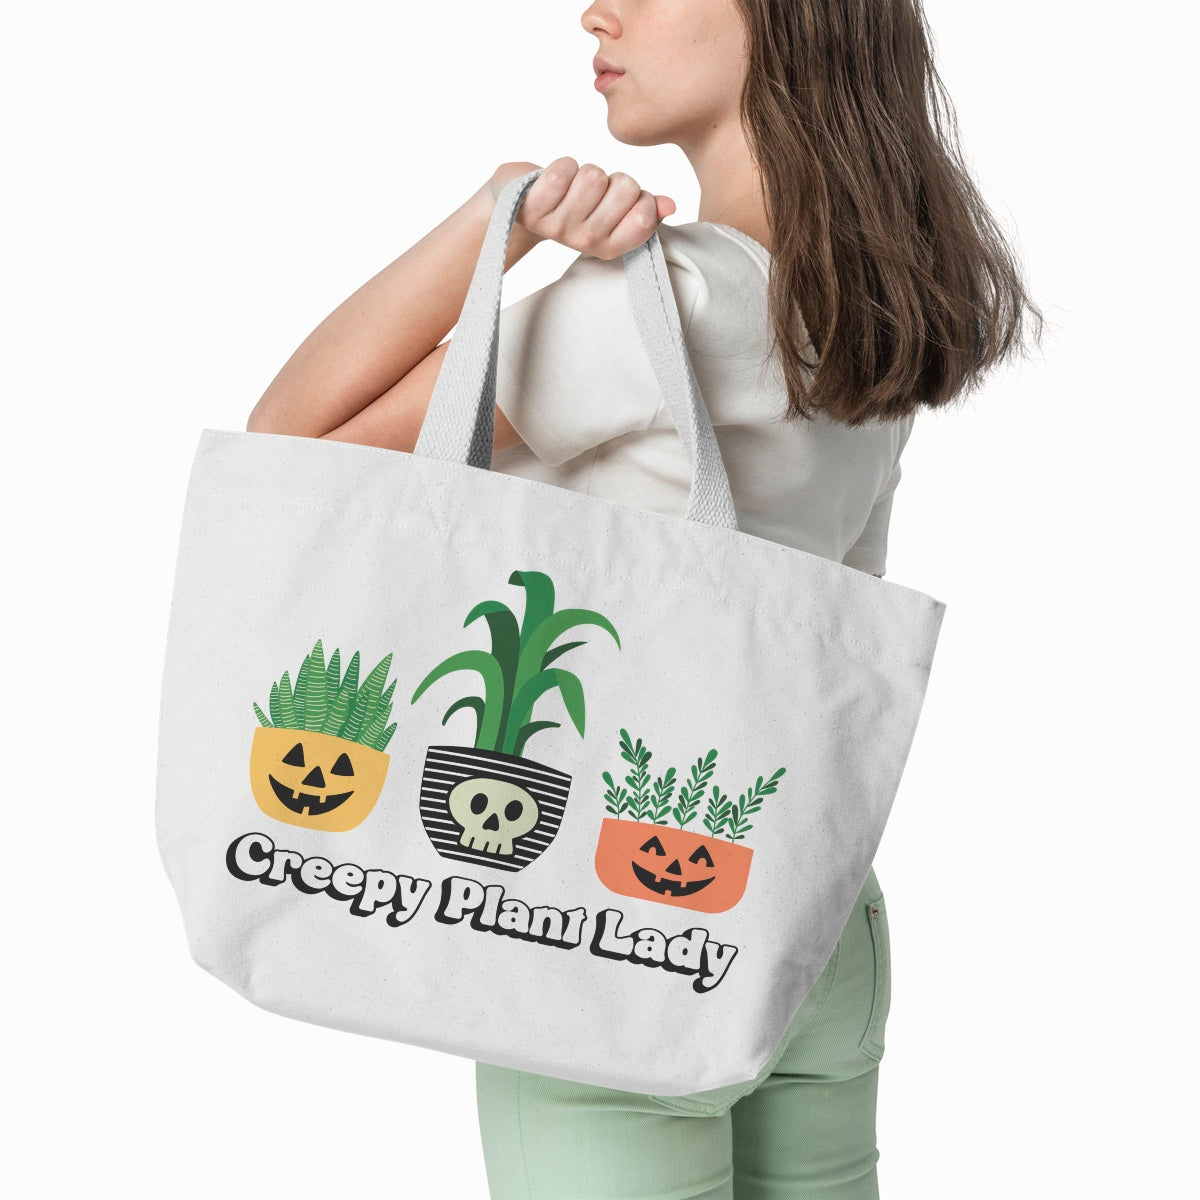 Creepy Plant Lady SVG Digital Download Design File